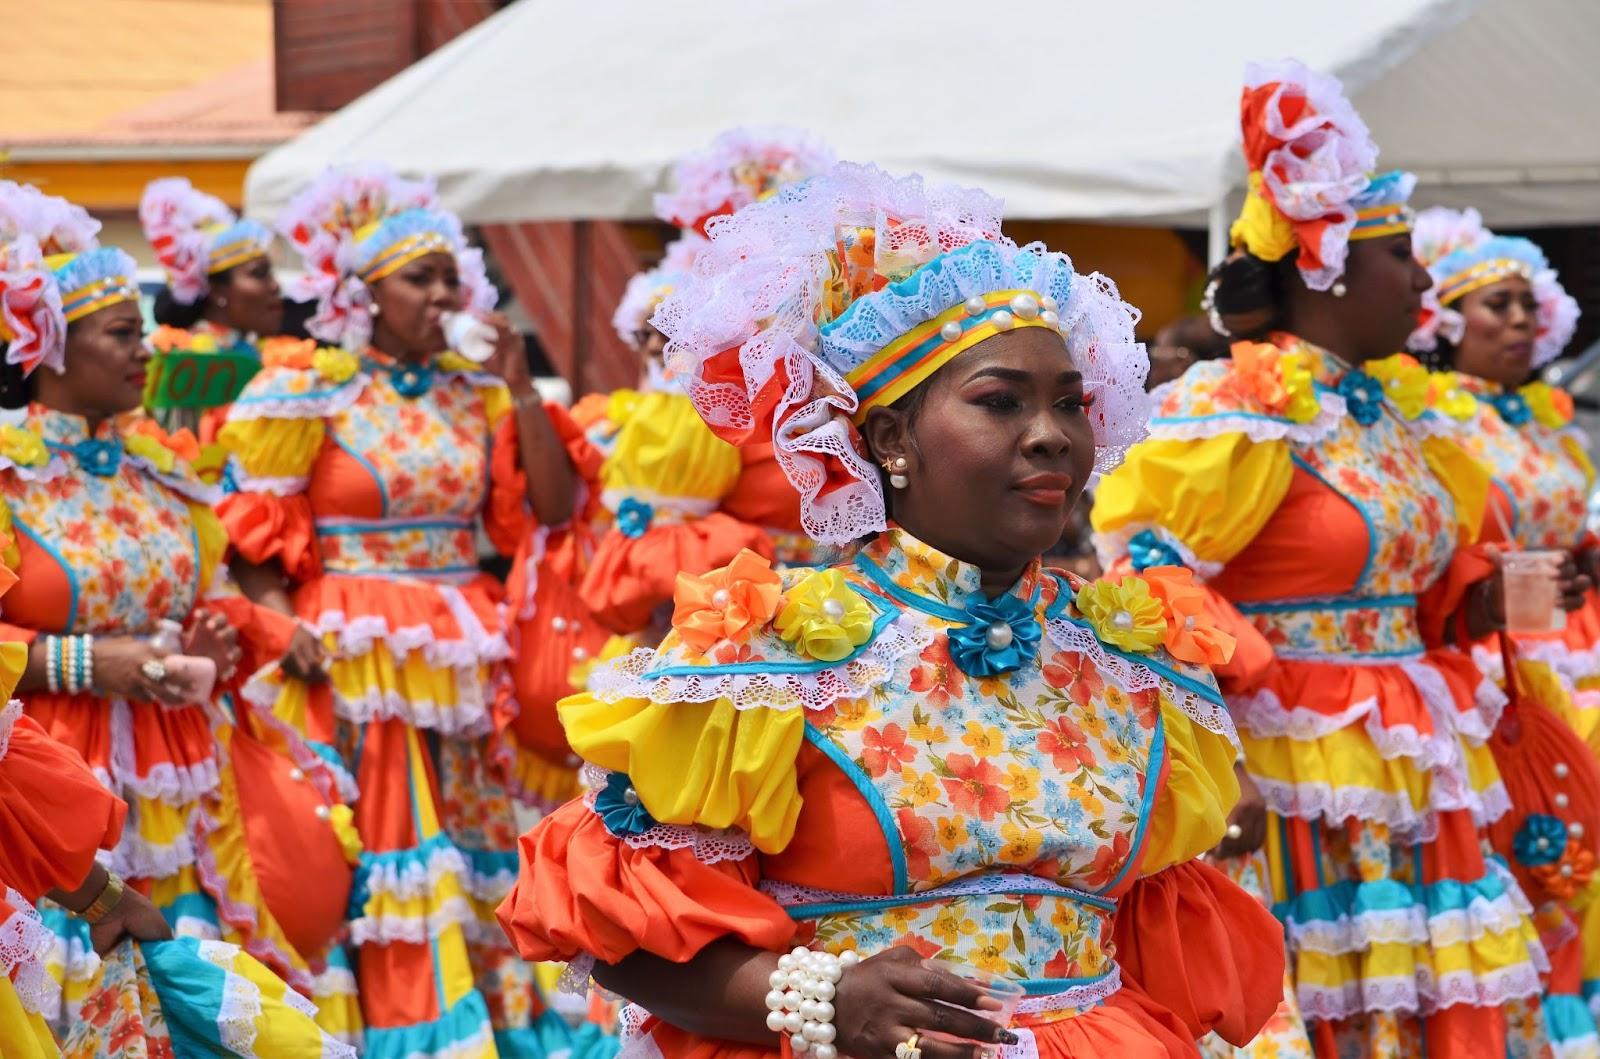 Easter parade on 21 april 2019 at Santa Maria, Curacao, Antilles